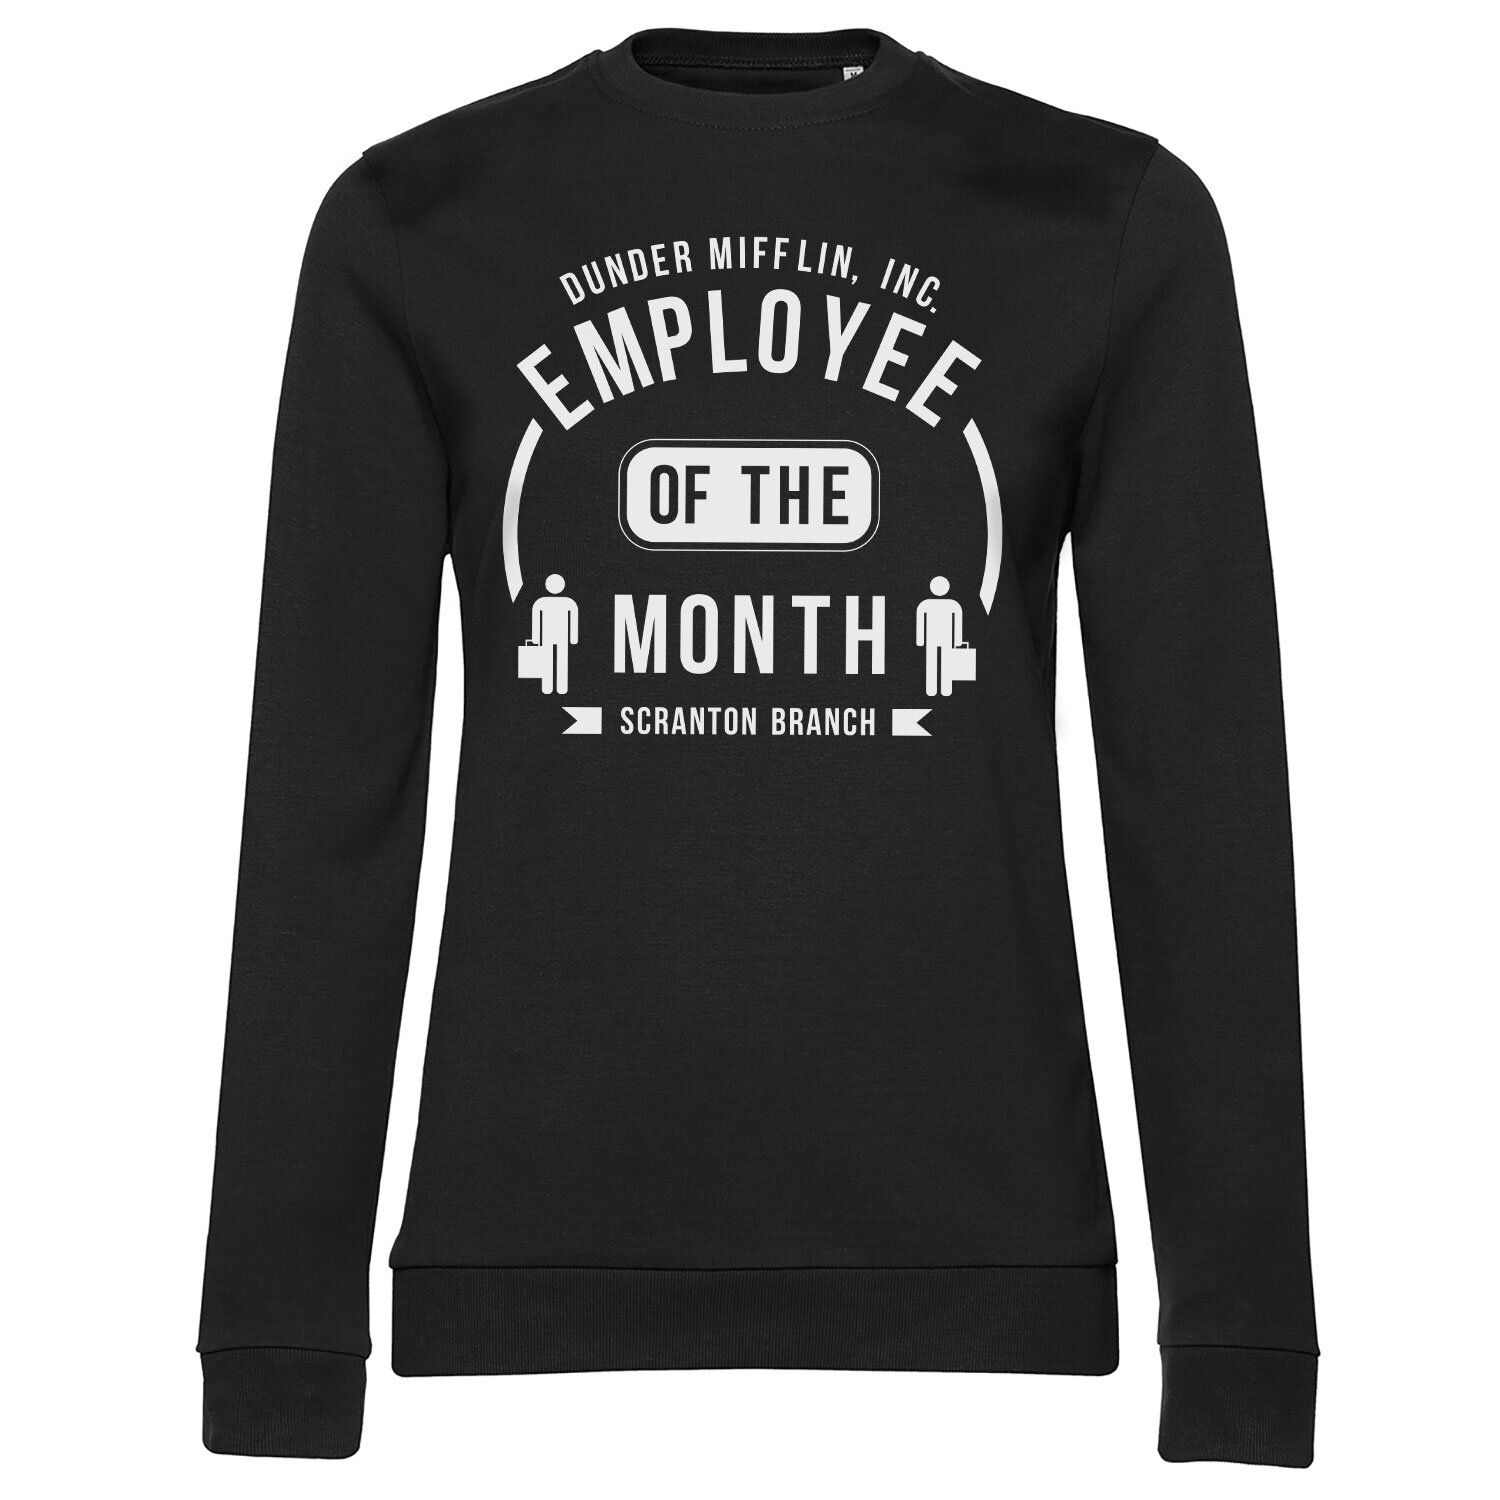 Dunder Mifflin Employee Of The Month Girly Sweatshirt